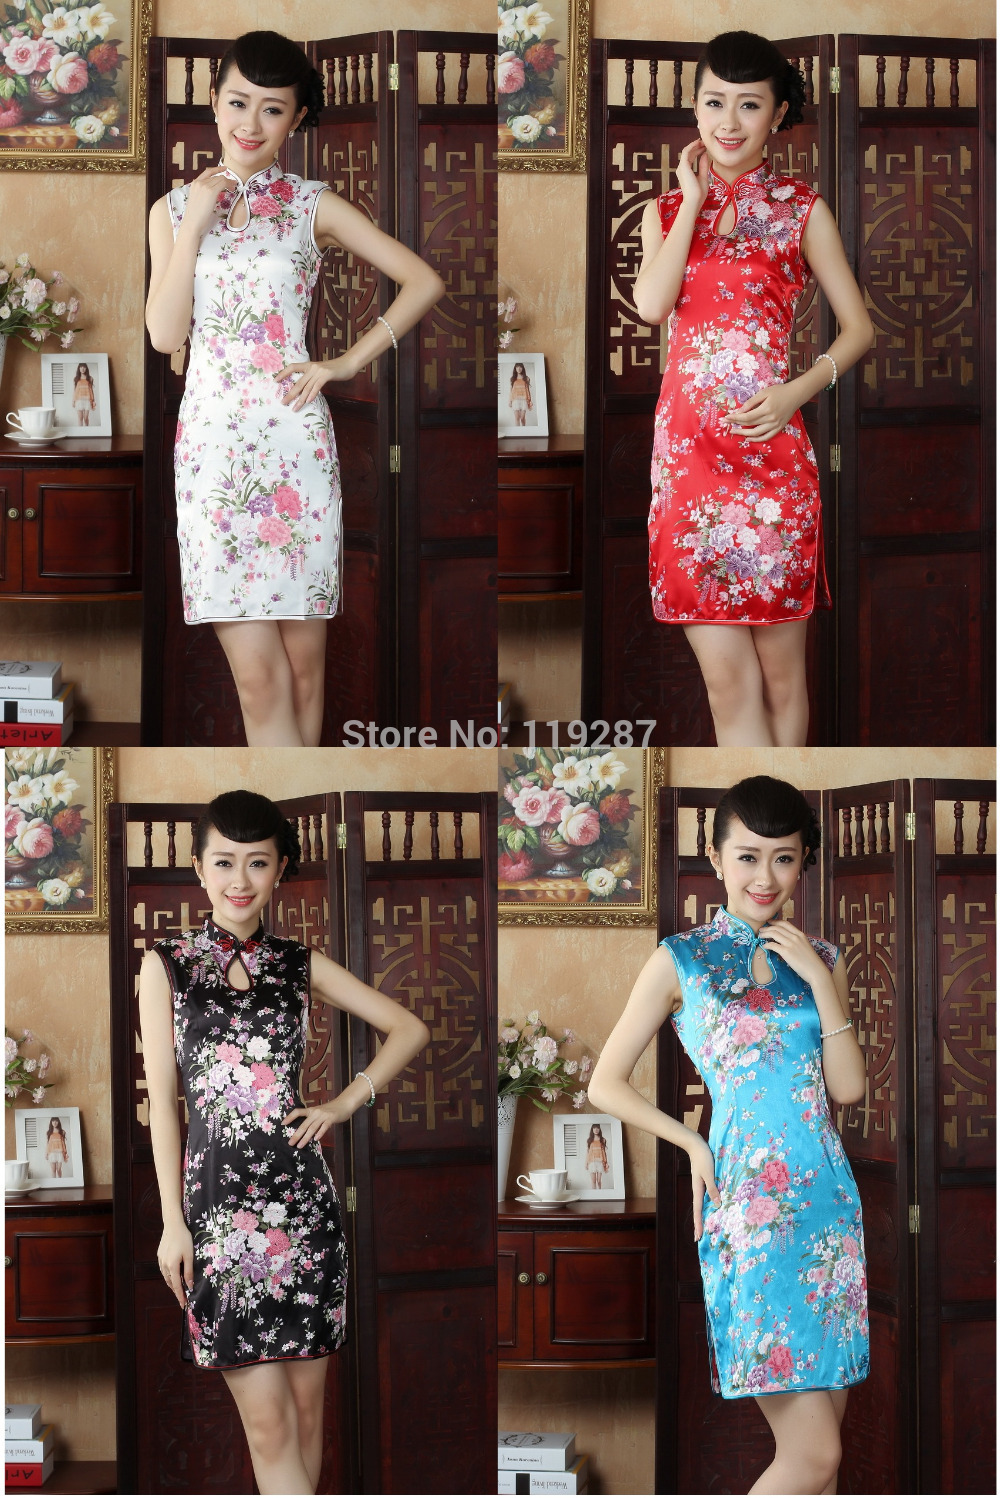 상하이 스토리 중국어 번체 드레스 가짜 실크 cheongsam 중국어 여성 드레스 레이온 qipao 드레스 4 색